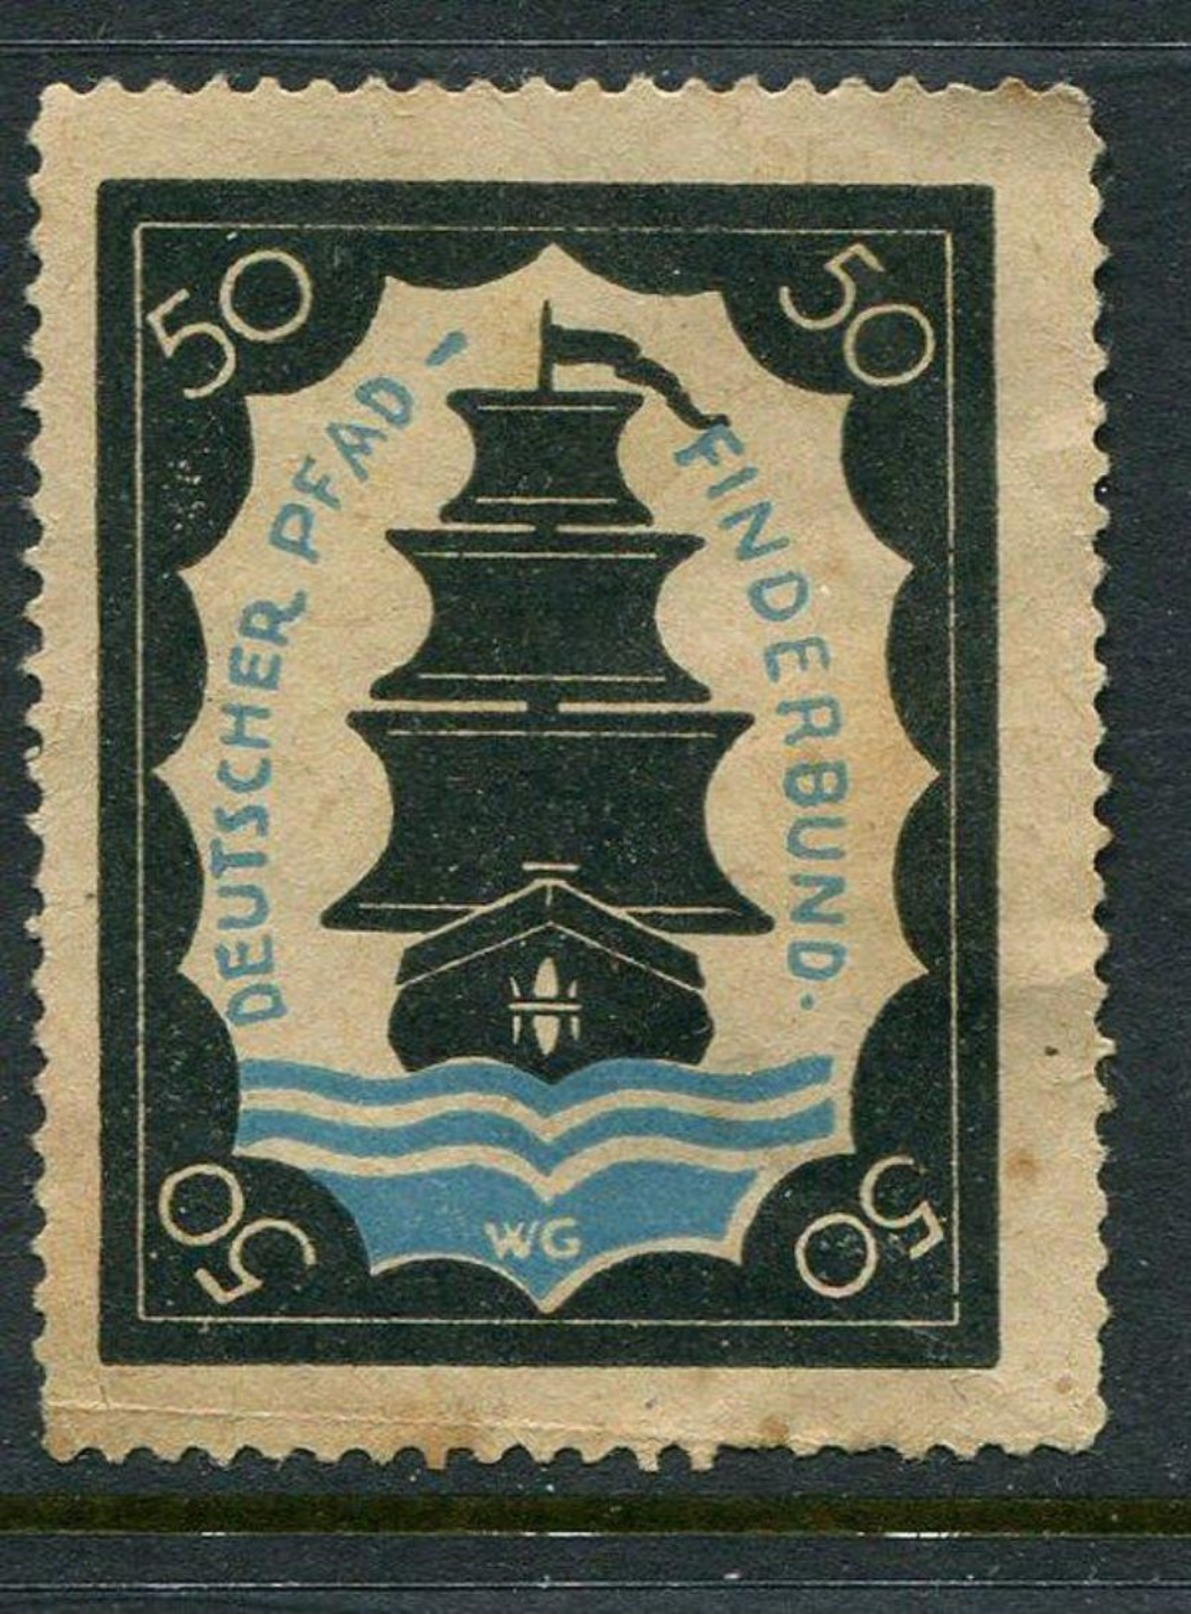 Deutscher Pfadfinderbund Reklamemarke Poster Stamp Vignette No Gum 1 3/8 X 1 3/4" - Cinderellas